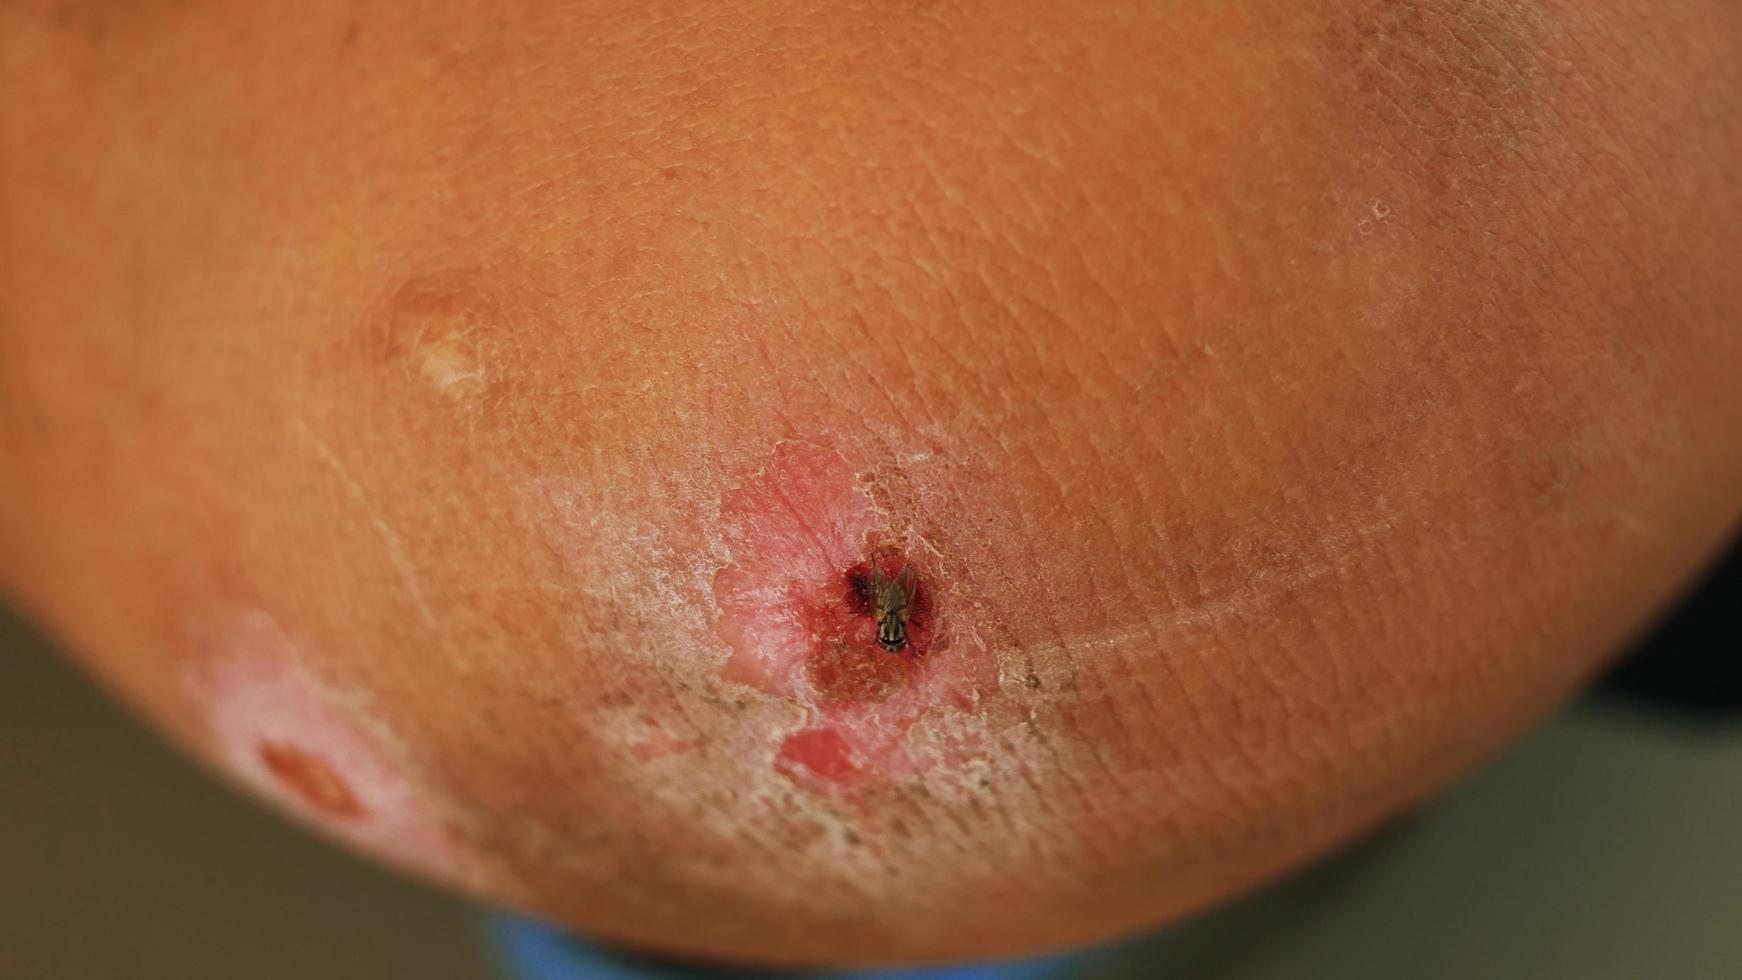 la plaie par abrasion est infectée par des mouches et des maladies impures. photo